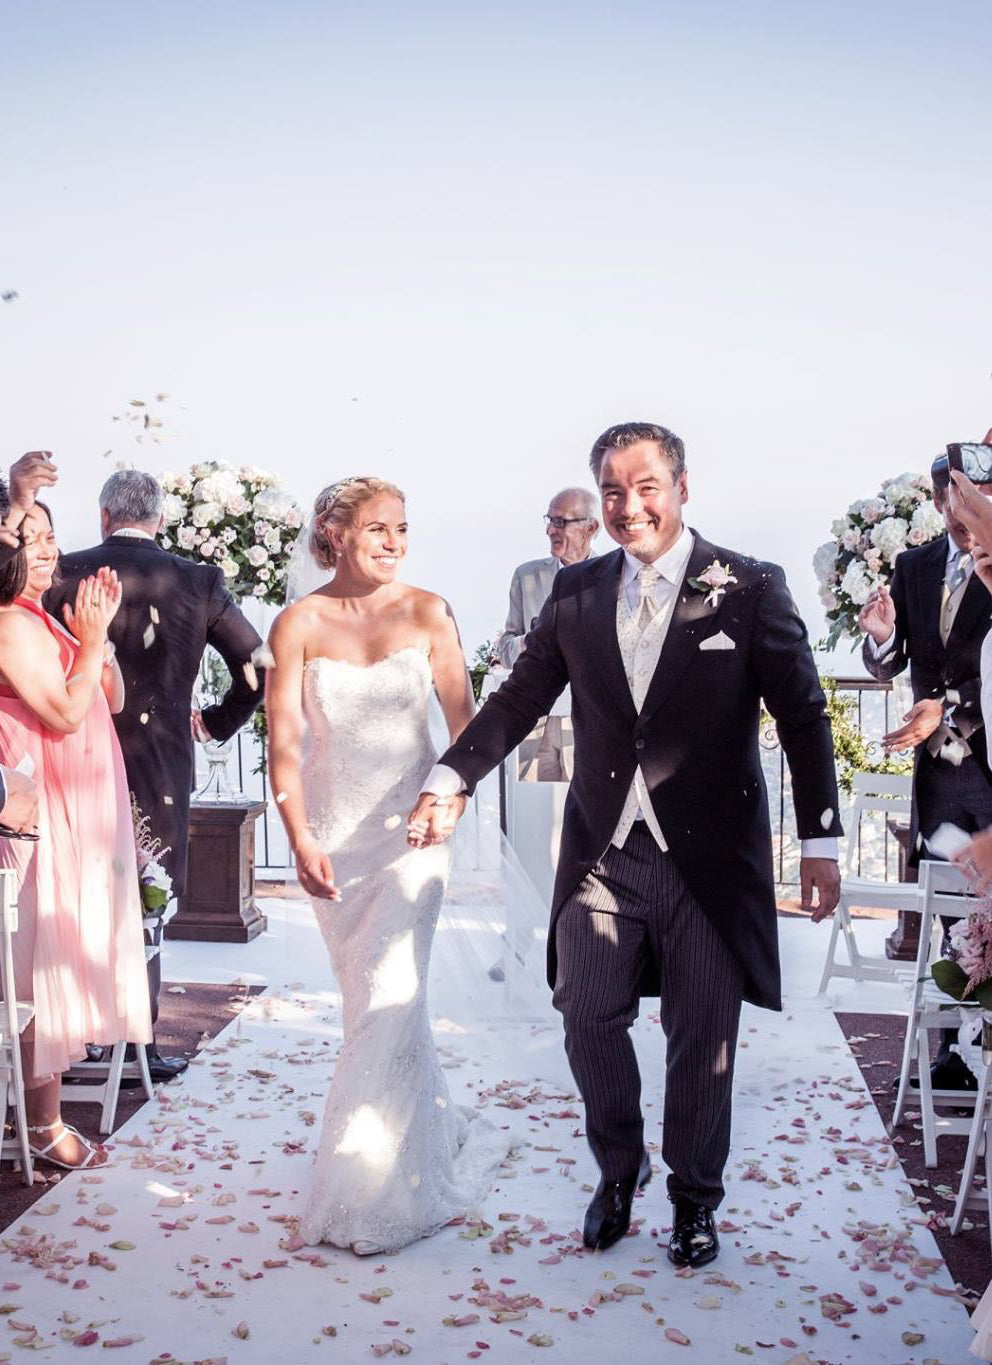 Stephanie & Alex’s wedding on the French Riviera